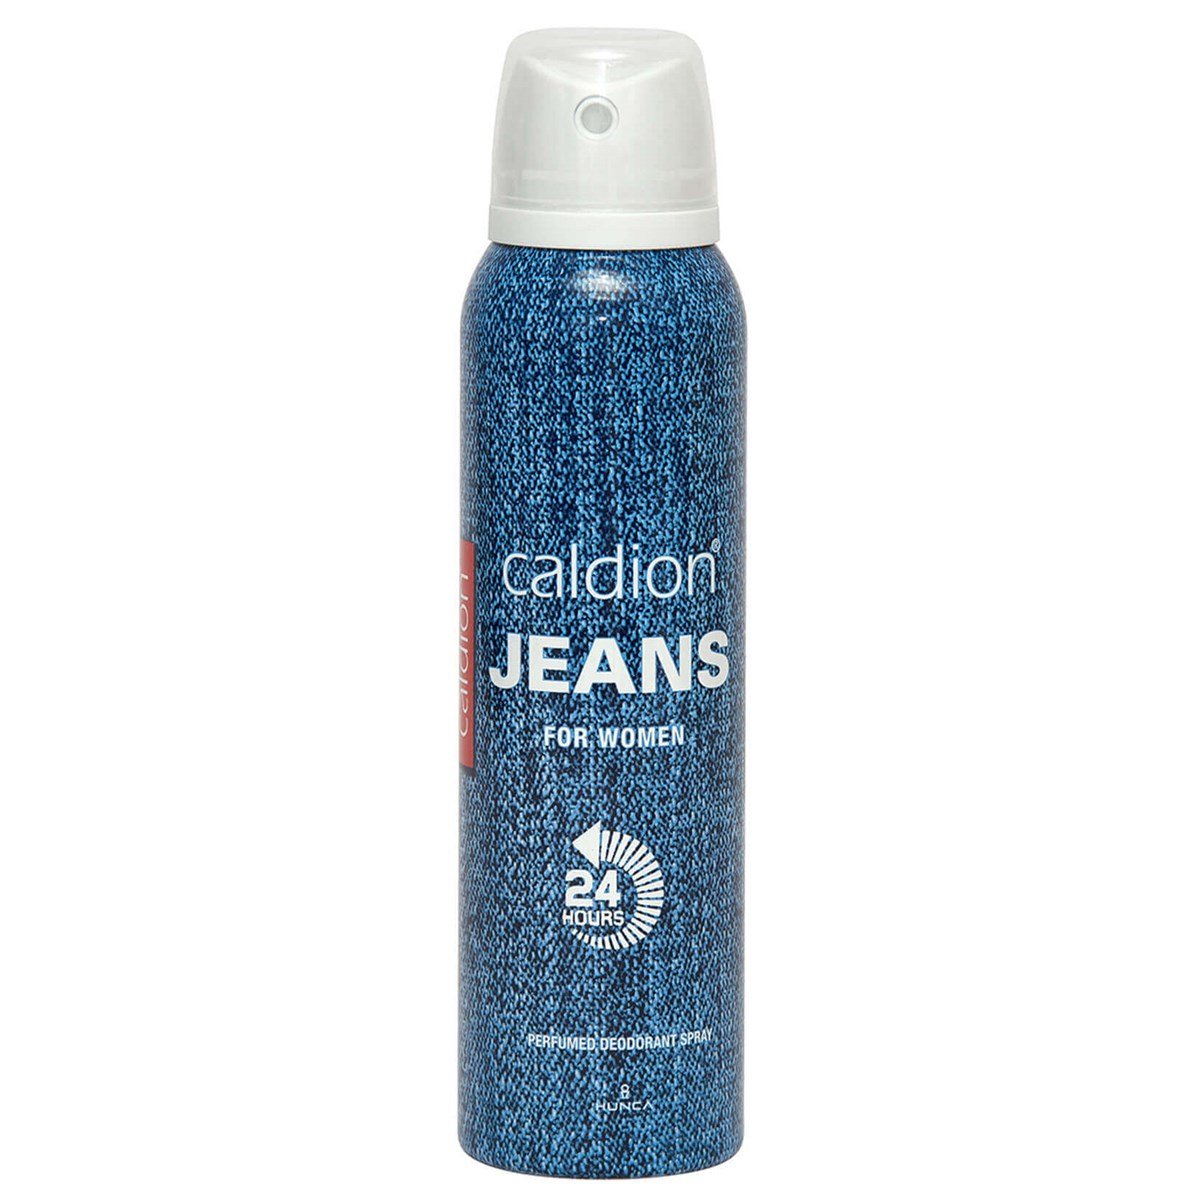 Caldion Jeans Deodorant Kadın 150 ml Fiyatları | Dermosiparis.com